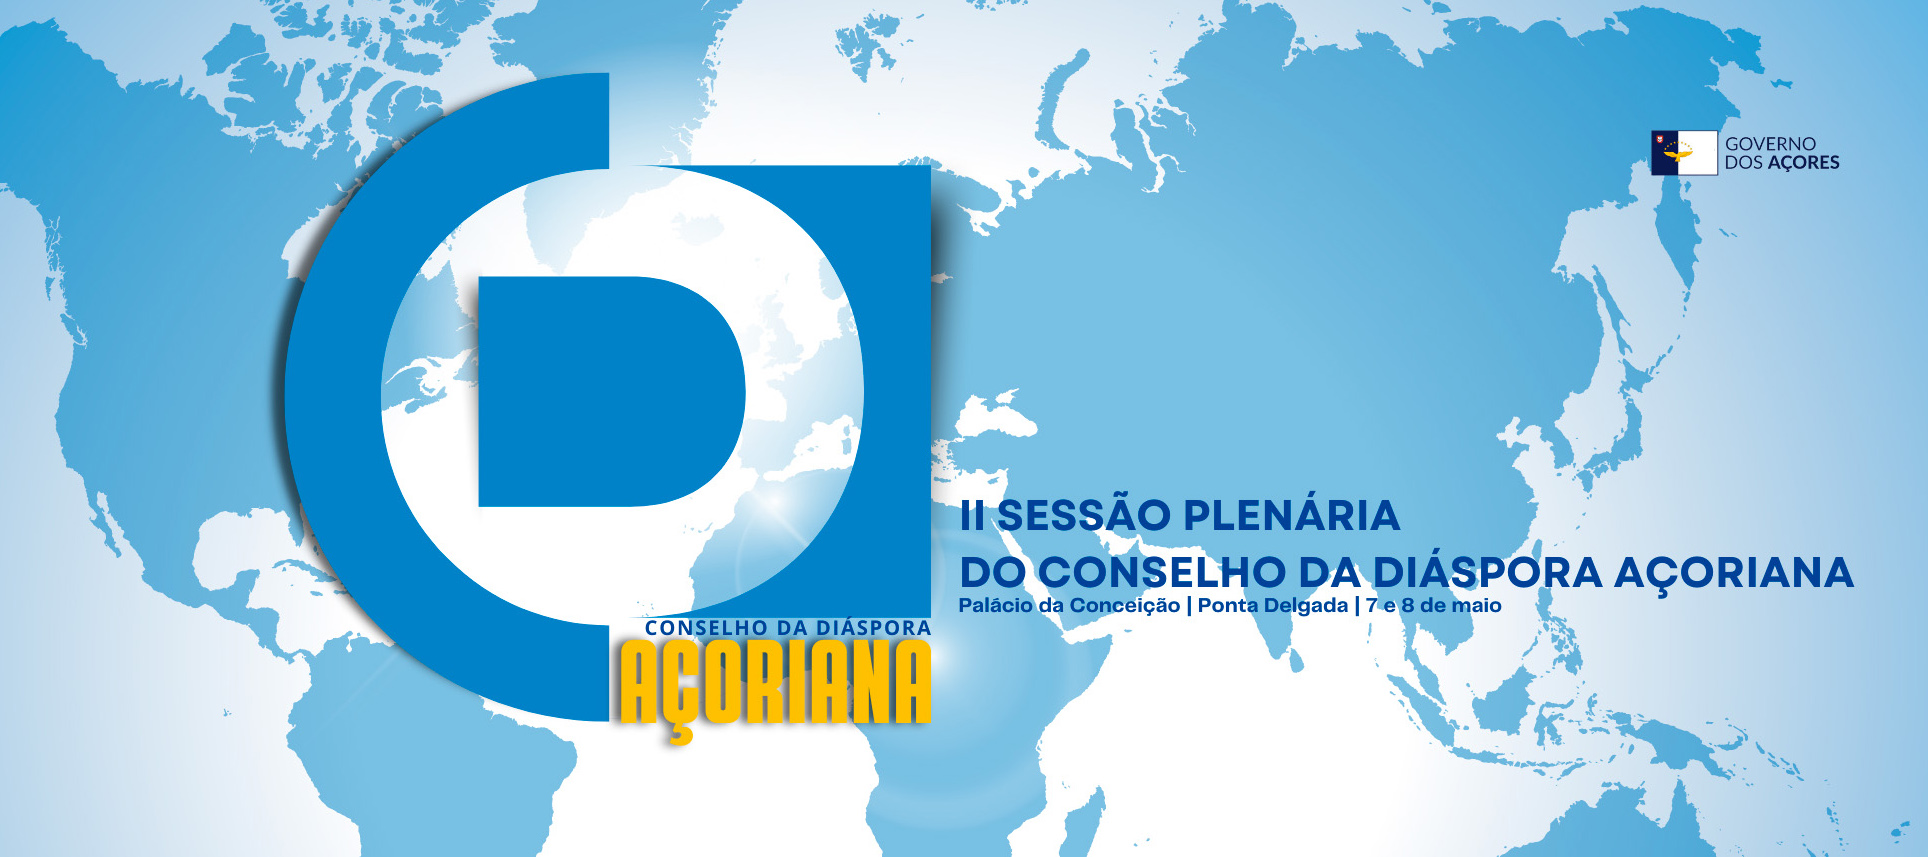 Conselho da Diáspora Açoriana reúne-se em Ponta Delgada a 7 e 8 de maio